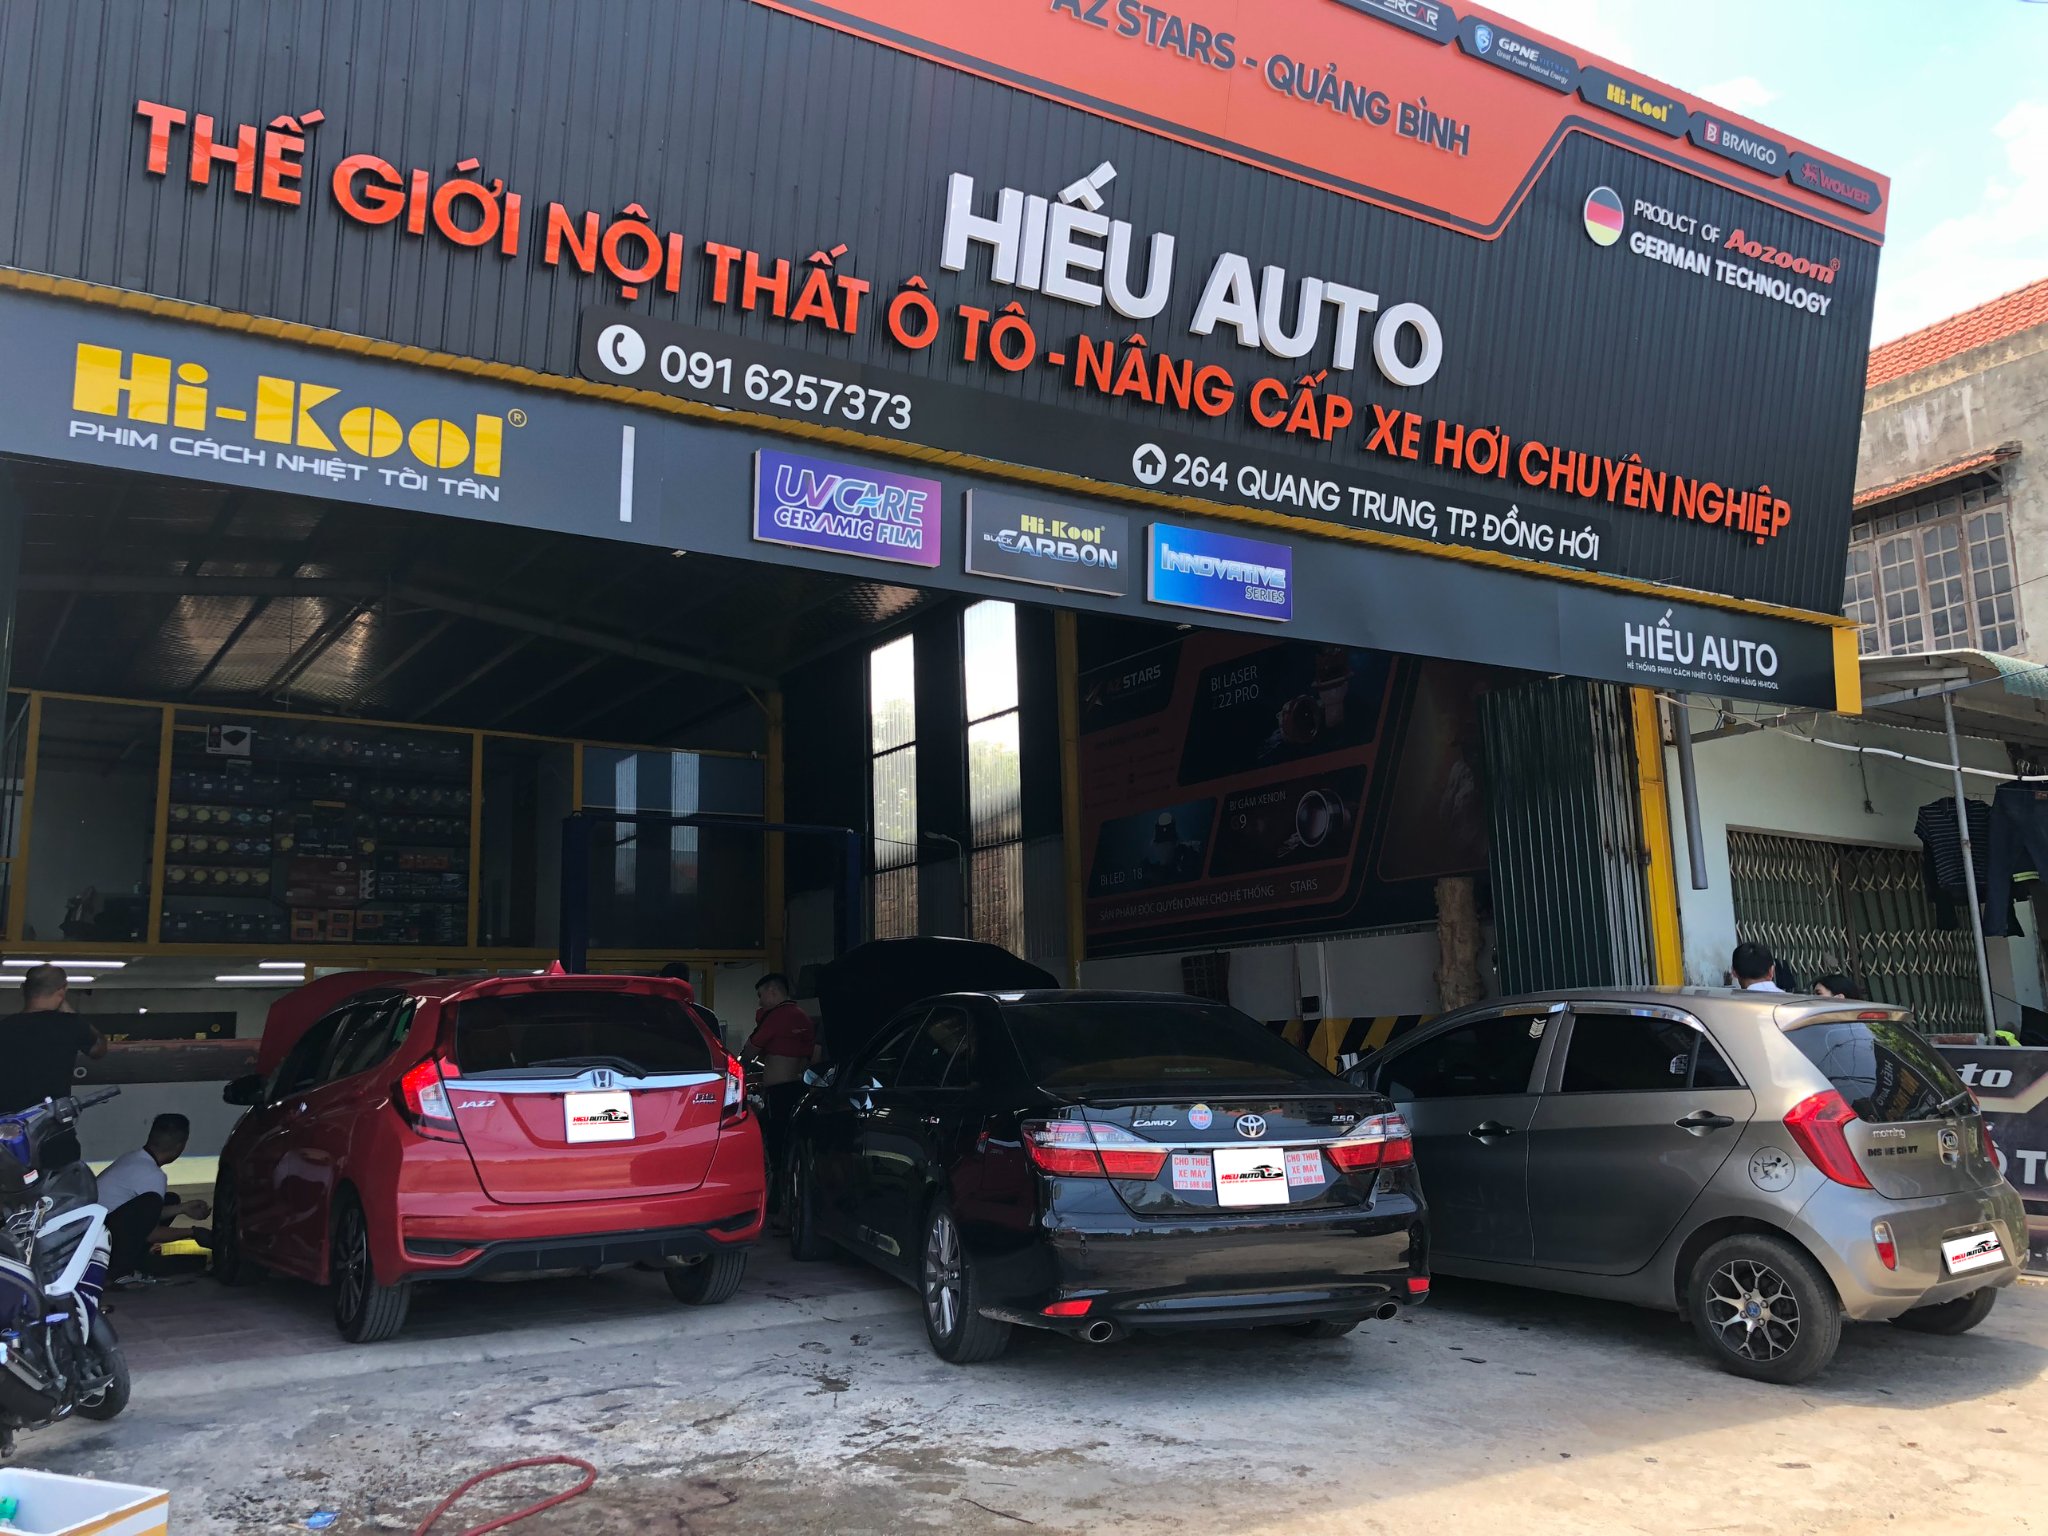 Hiếu Auto – Đại lý bán hàng vật liệu cách âm SIP tại Quảng Bình